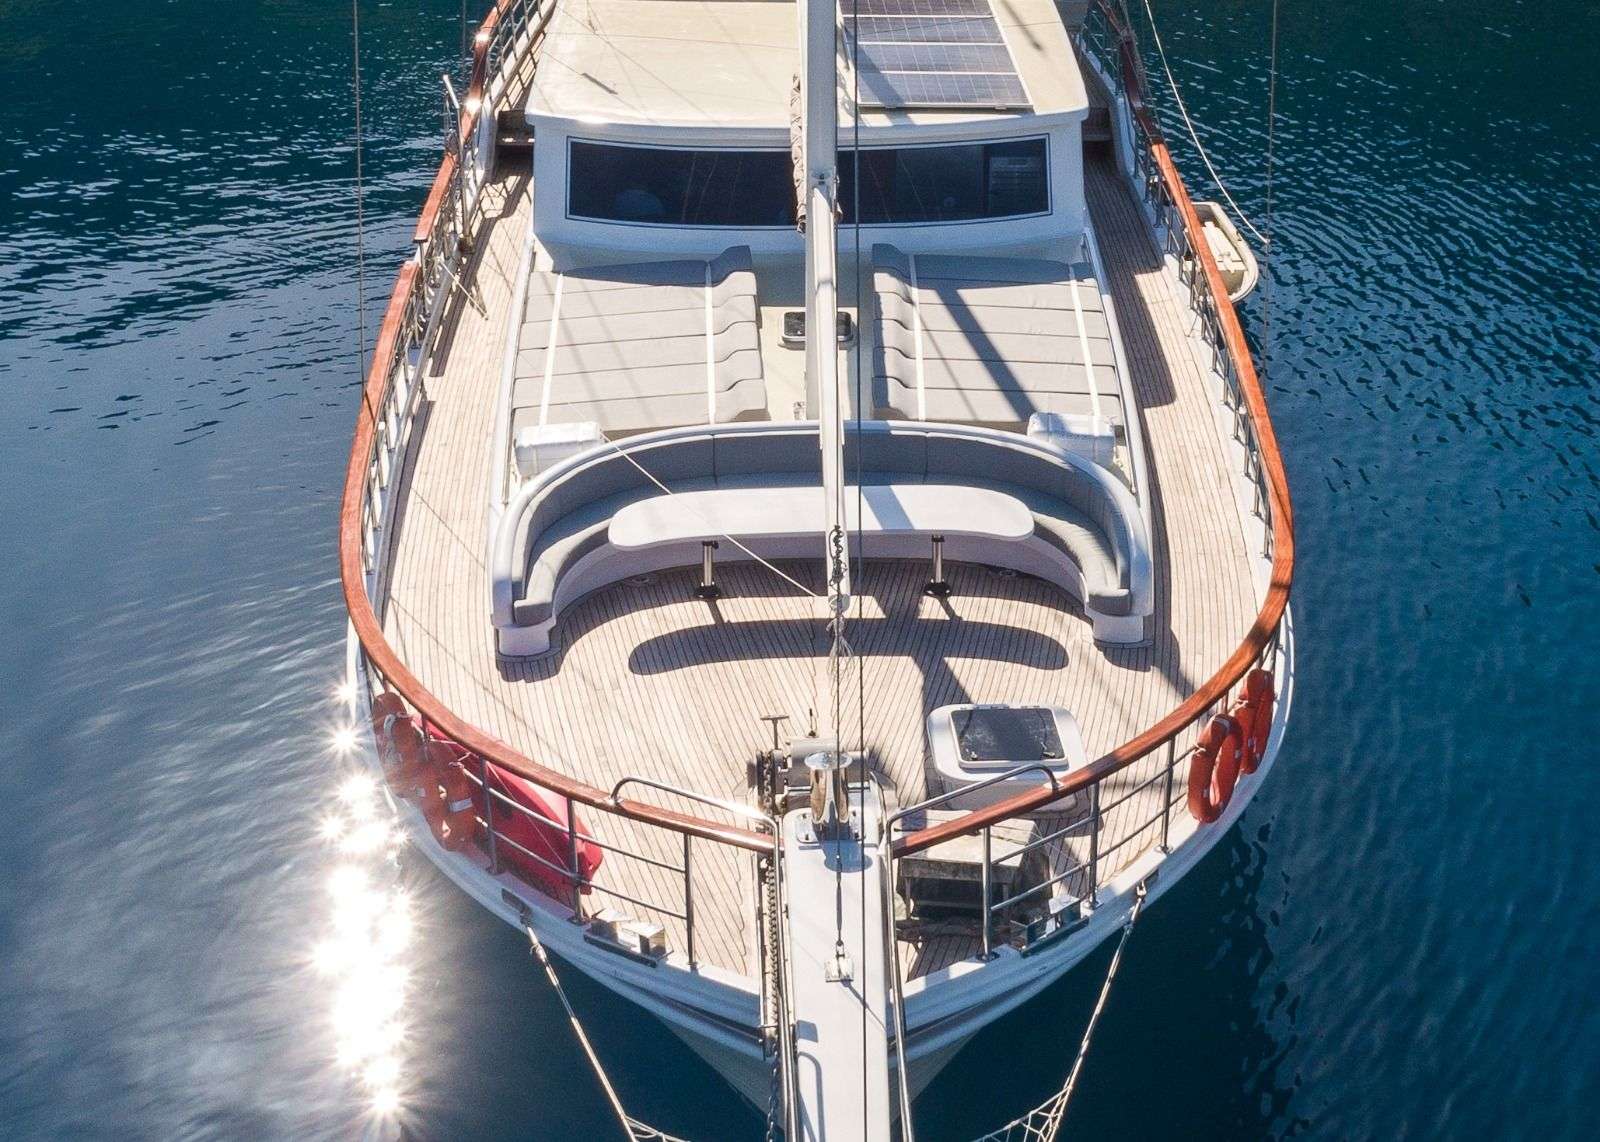 koray ege - Yacht Charter Göcek & Boat hire in Greece & Turkey 6